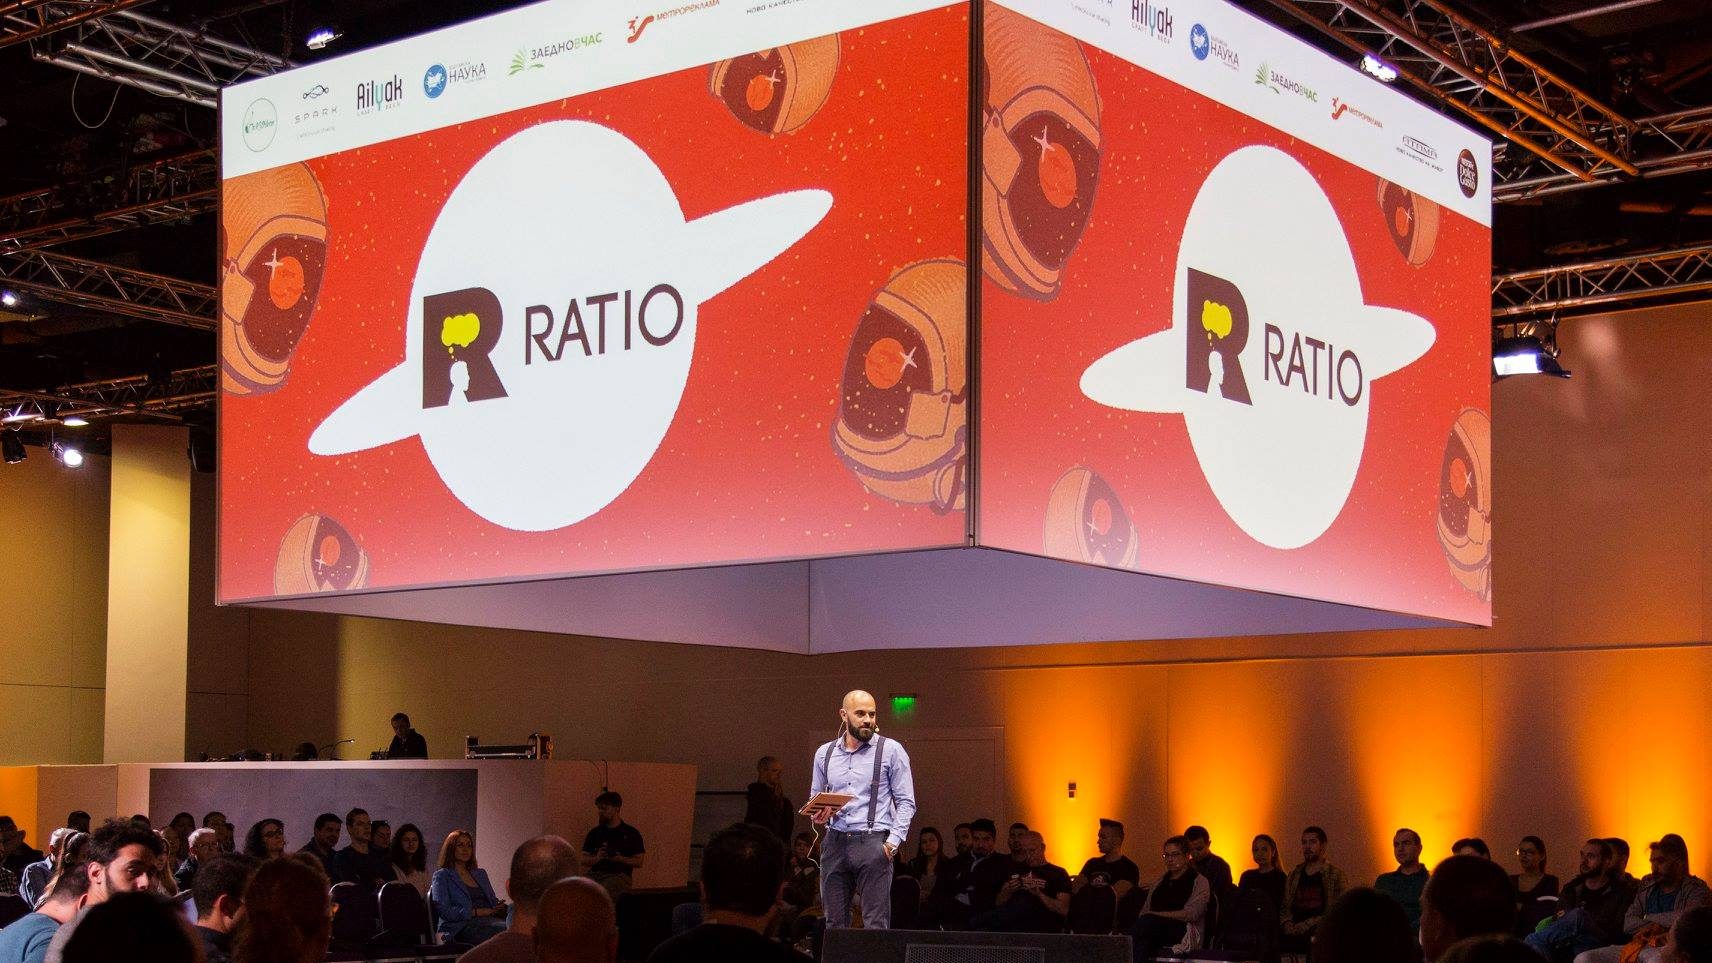 Ratio forum